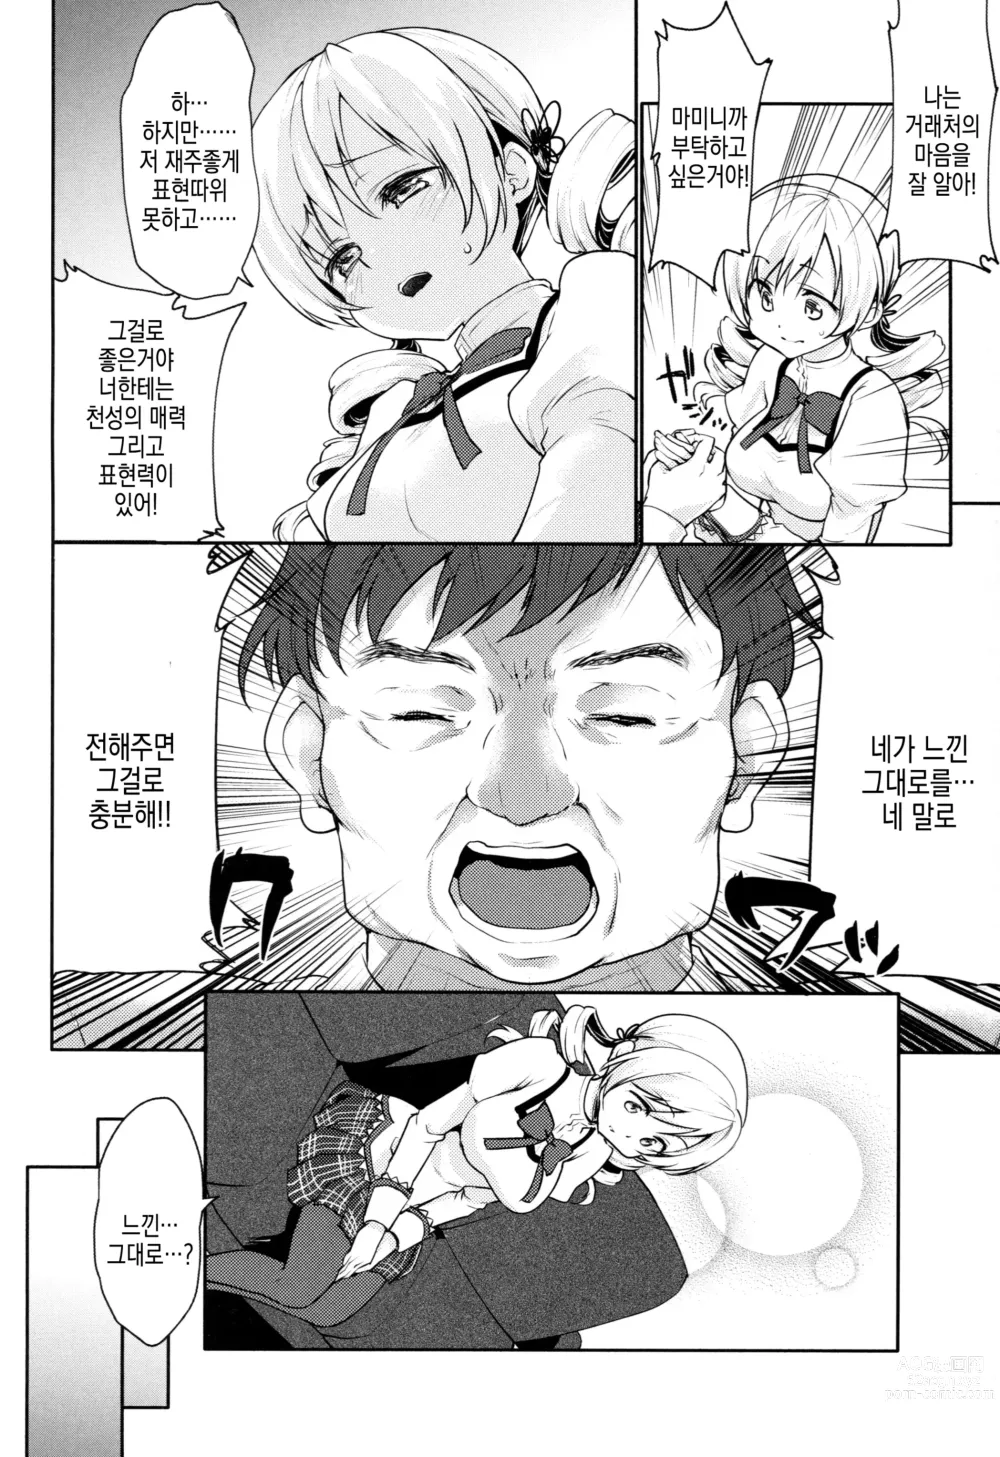 Page 5 of doujinshi 토모에 ○미의♥보지만개 장난감 리뷰